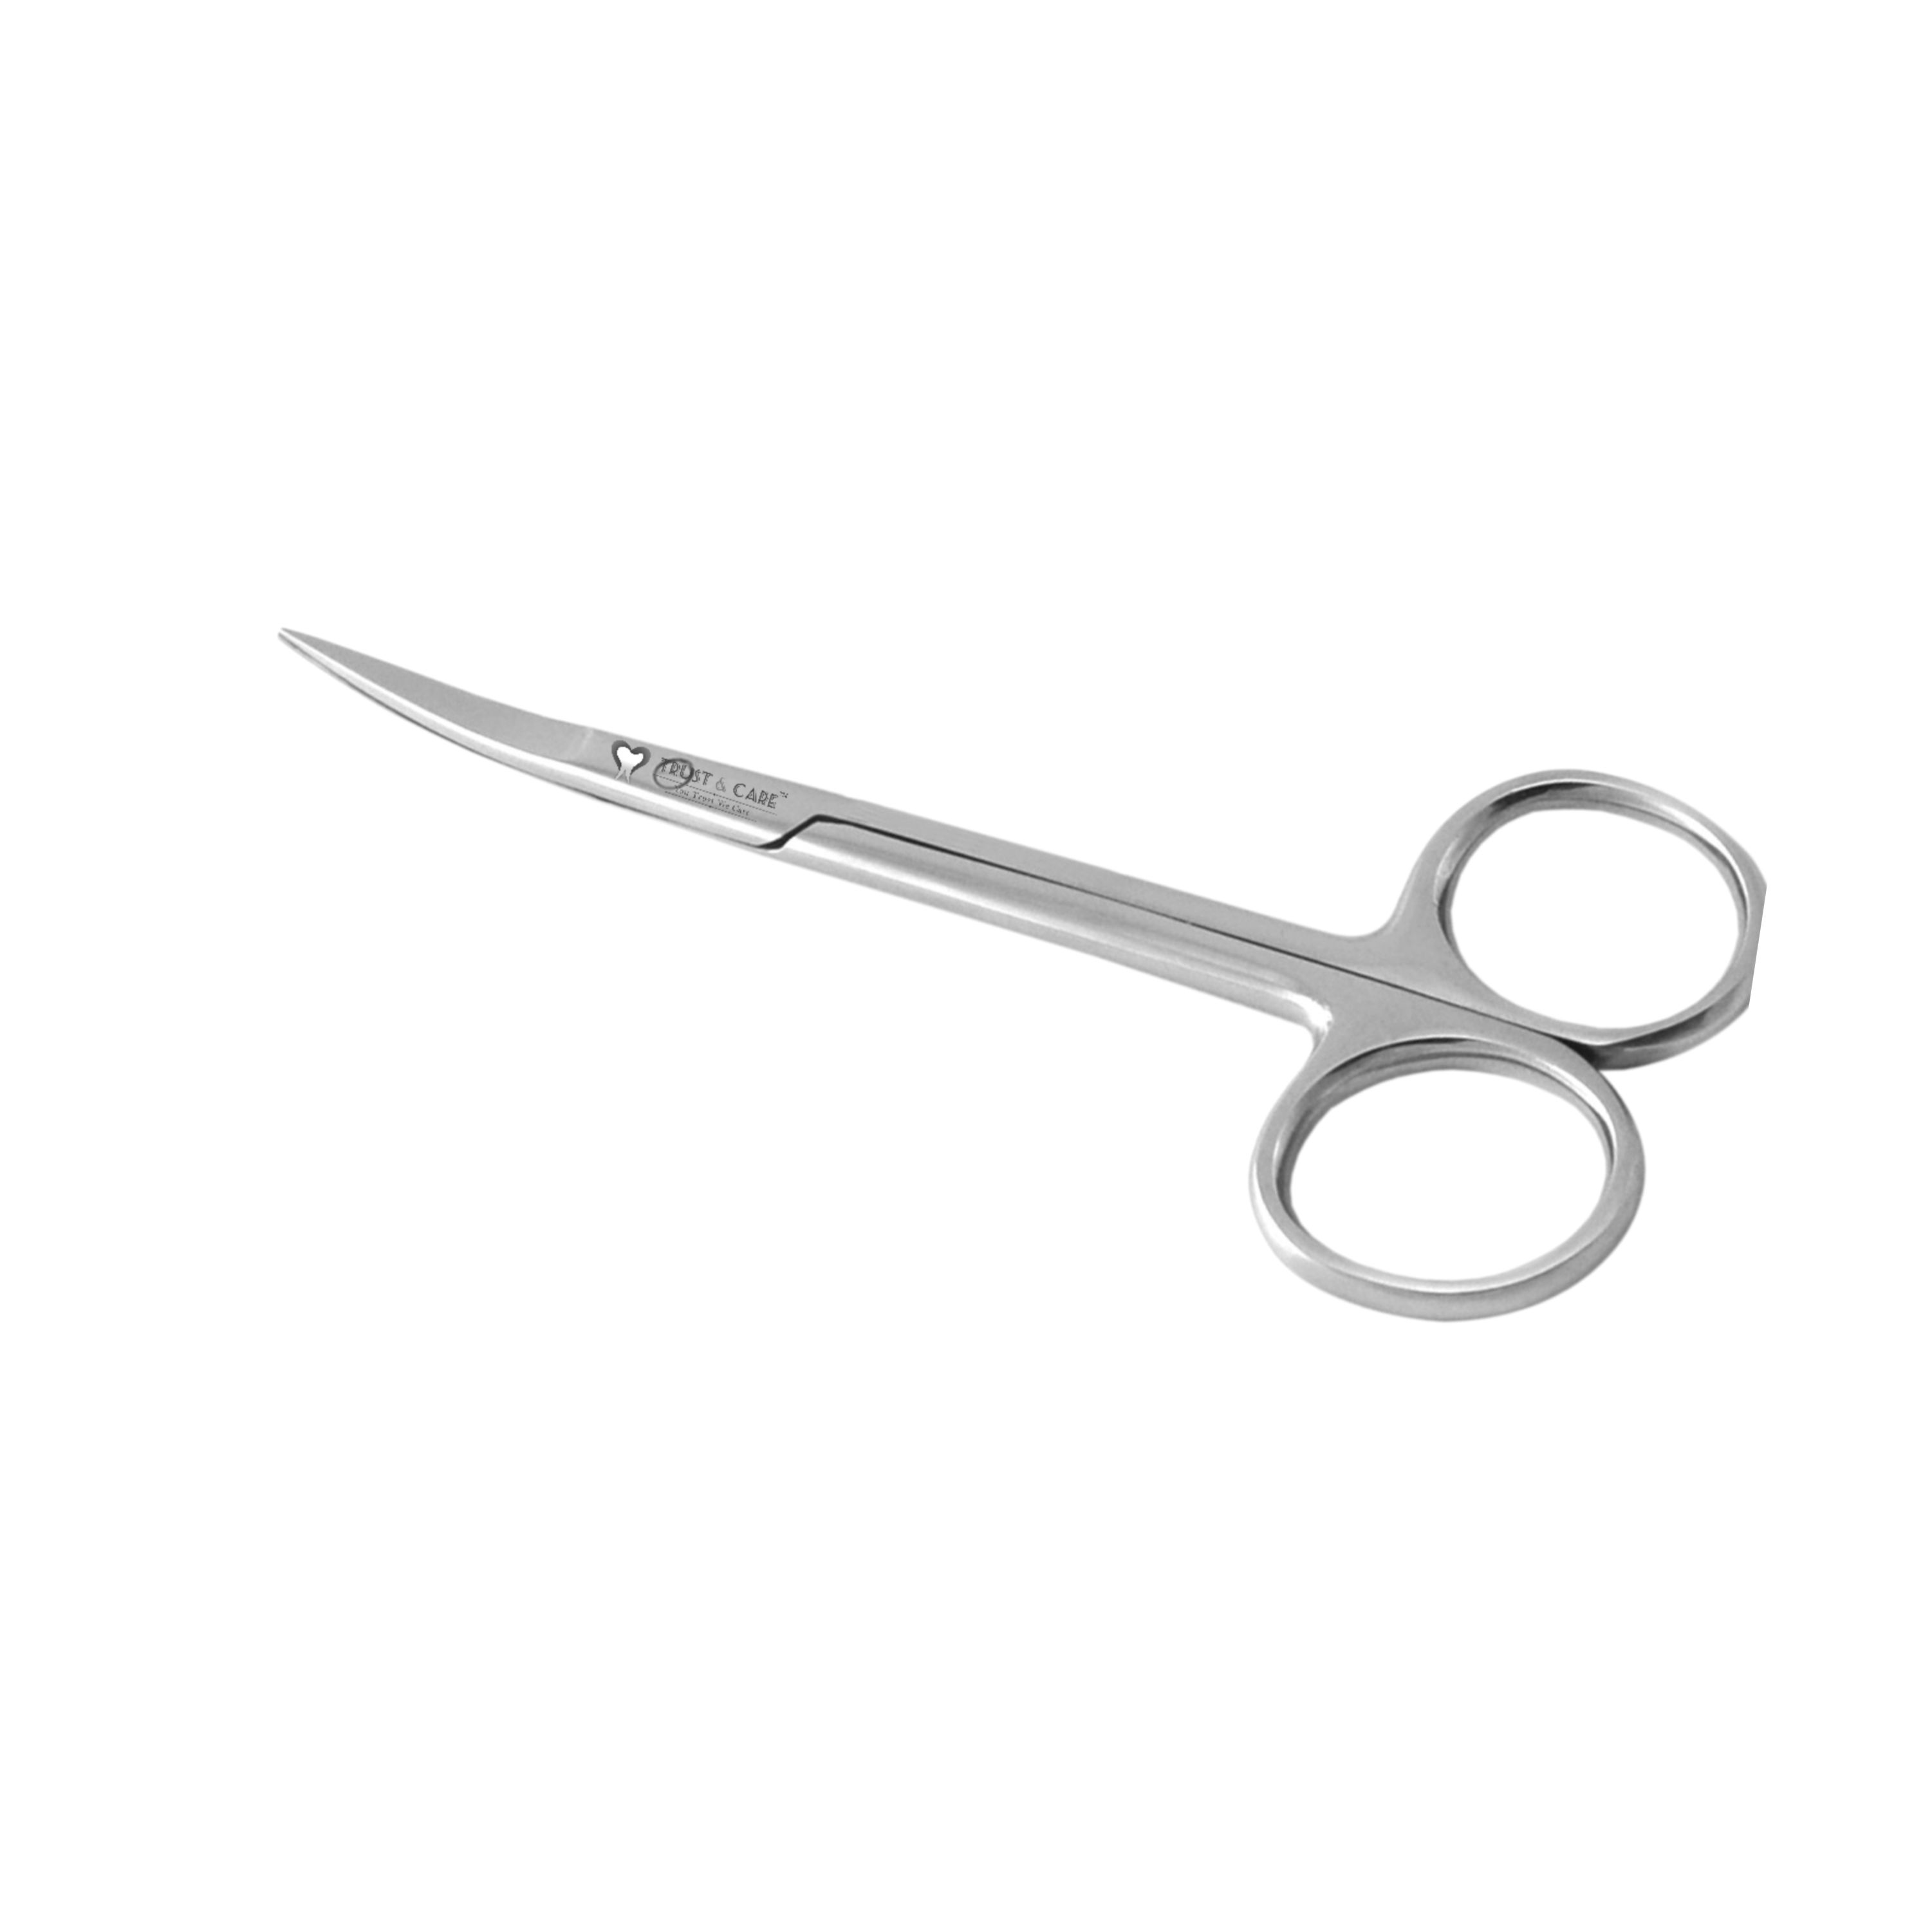 Trust & Care Iris Gum Scissor 11.5 Cm Curved